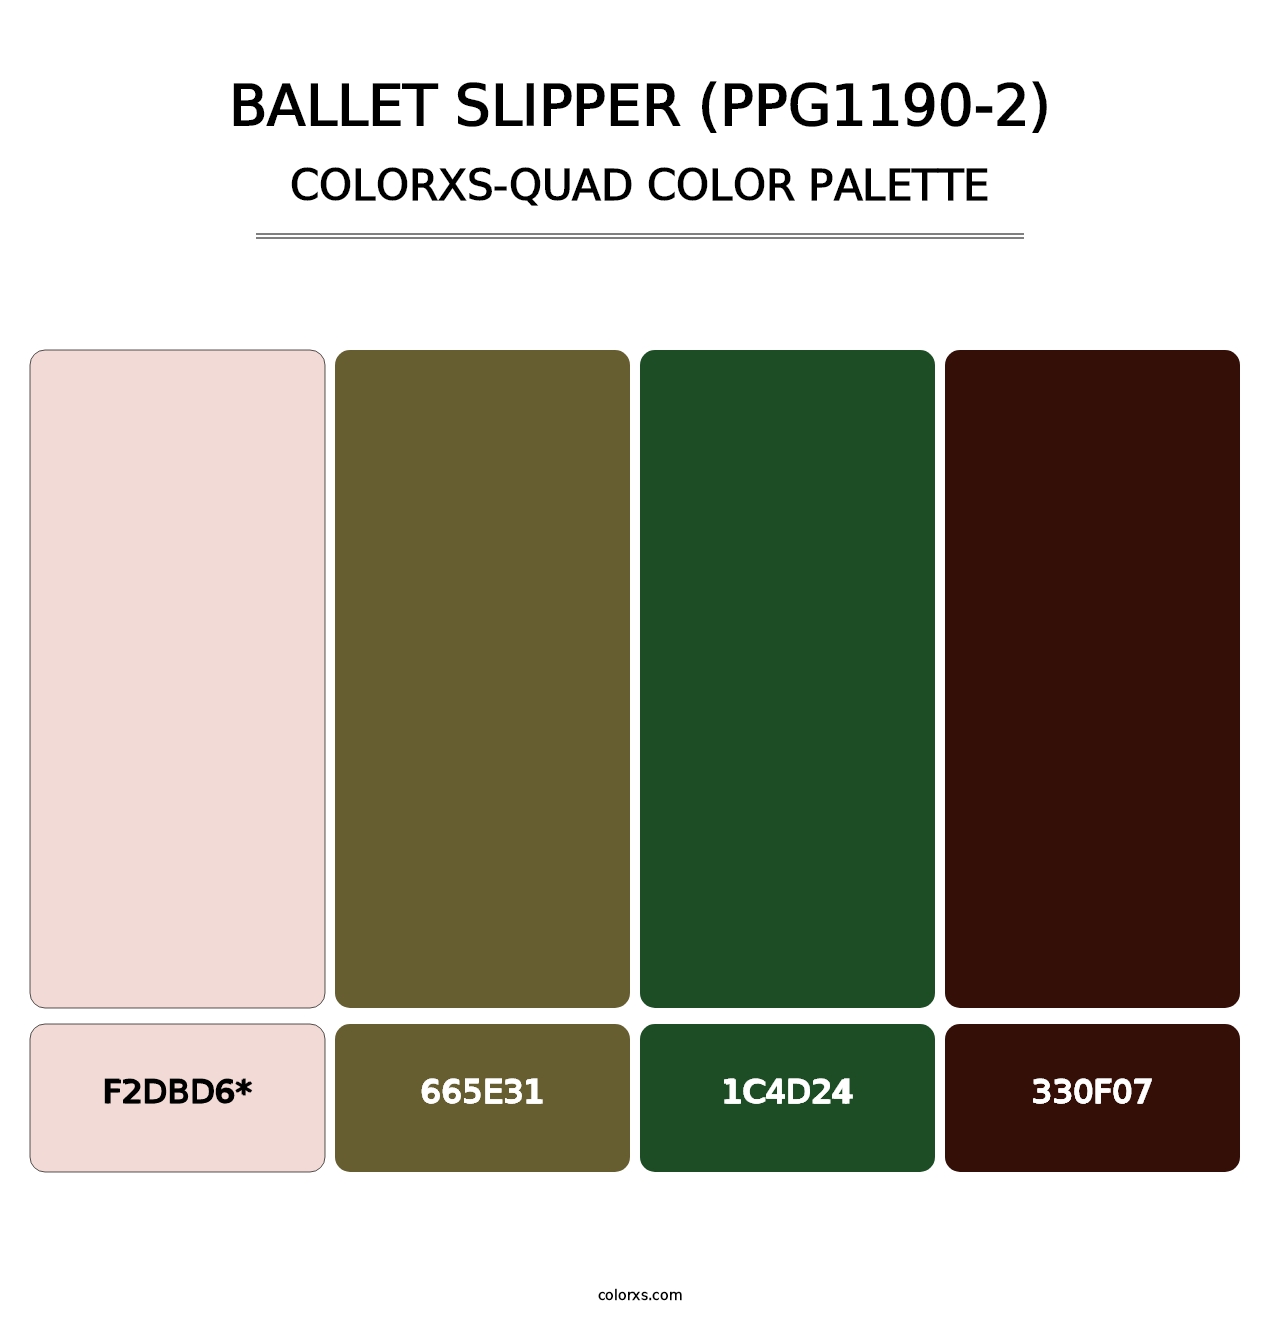 Ballet Slipper (PPG1190-2) - Colorxs Quad Palette